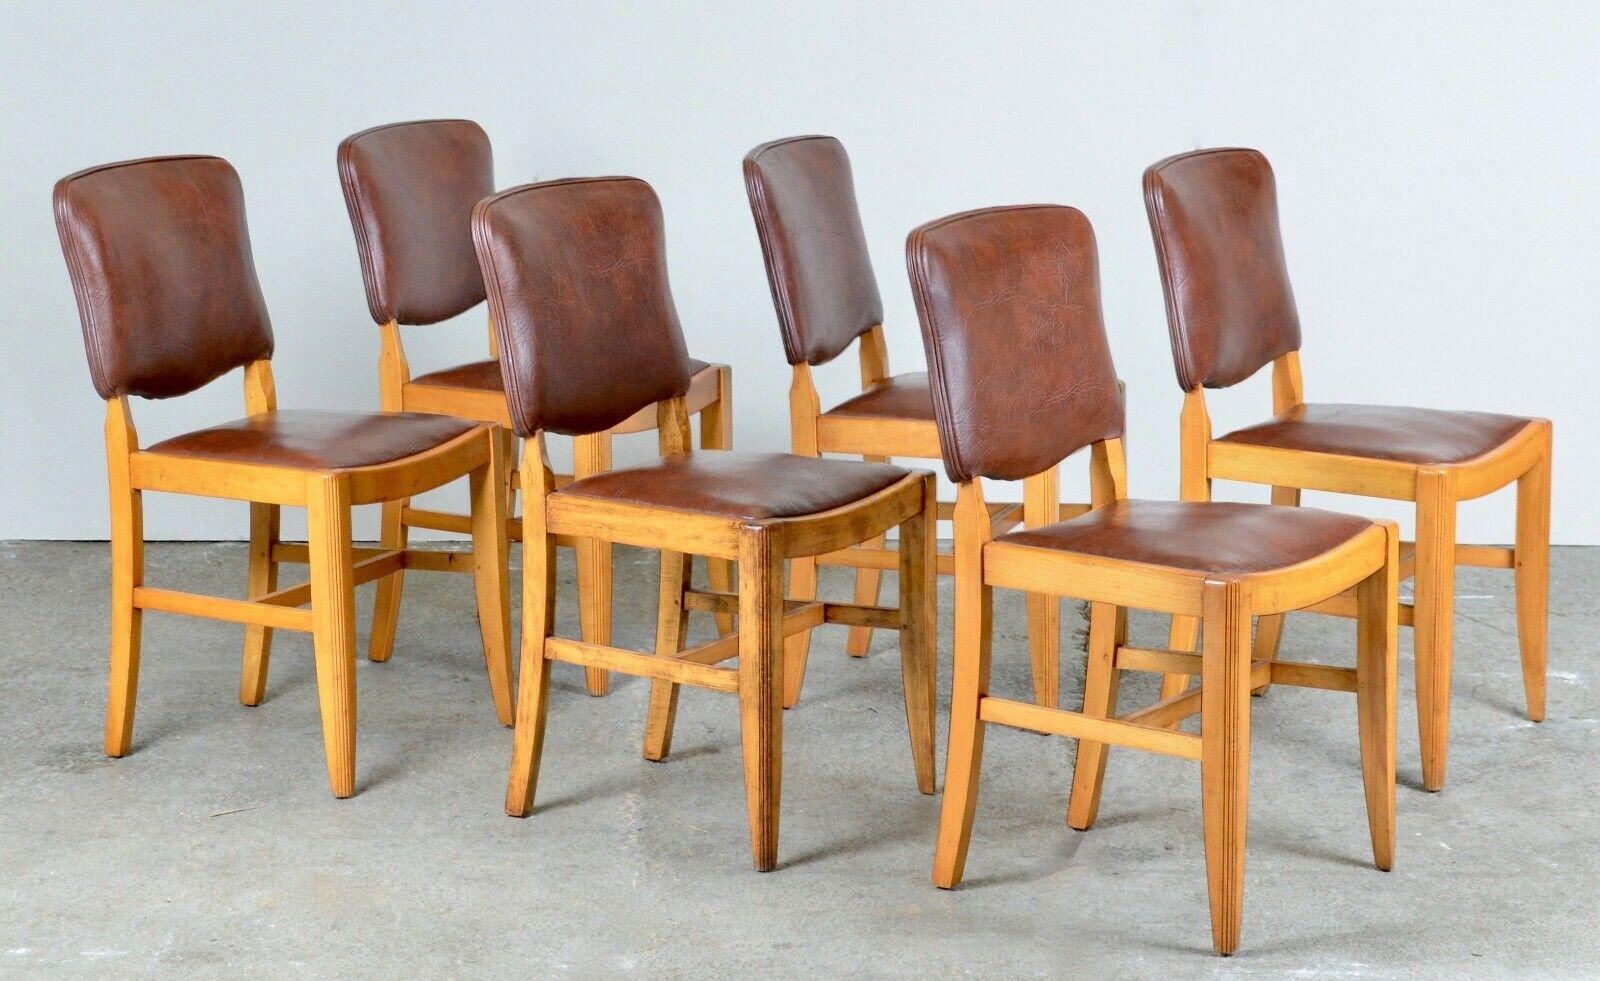 Wir freuen uns, diese Vintage-Suite von sechs braunen Leder- und Nussbaum-Esszimmerstühlen zum Verkauf anbieten zu können. Diese Stühle sind in sehr gutem Zustand, die Rückenlehnen und Sitze sind bequem und ein attraktives Set für jedes